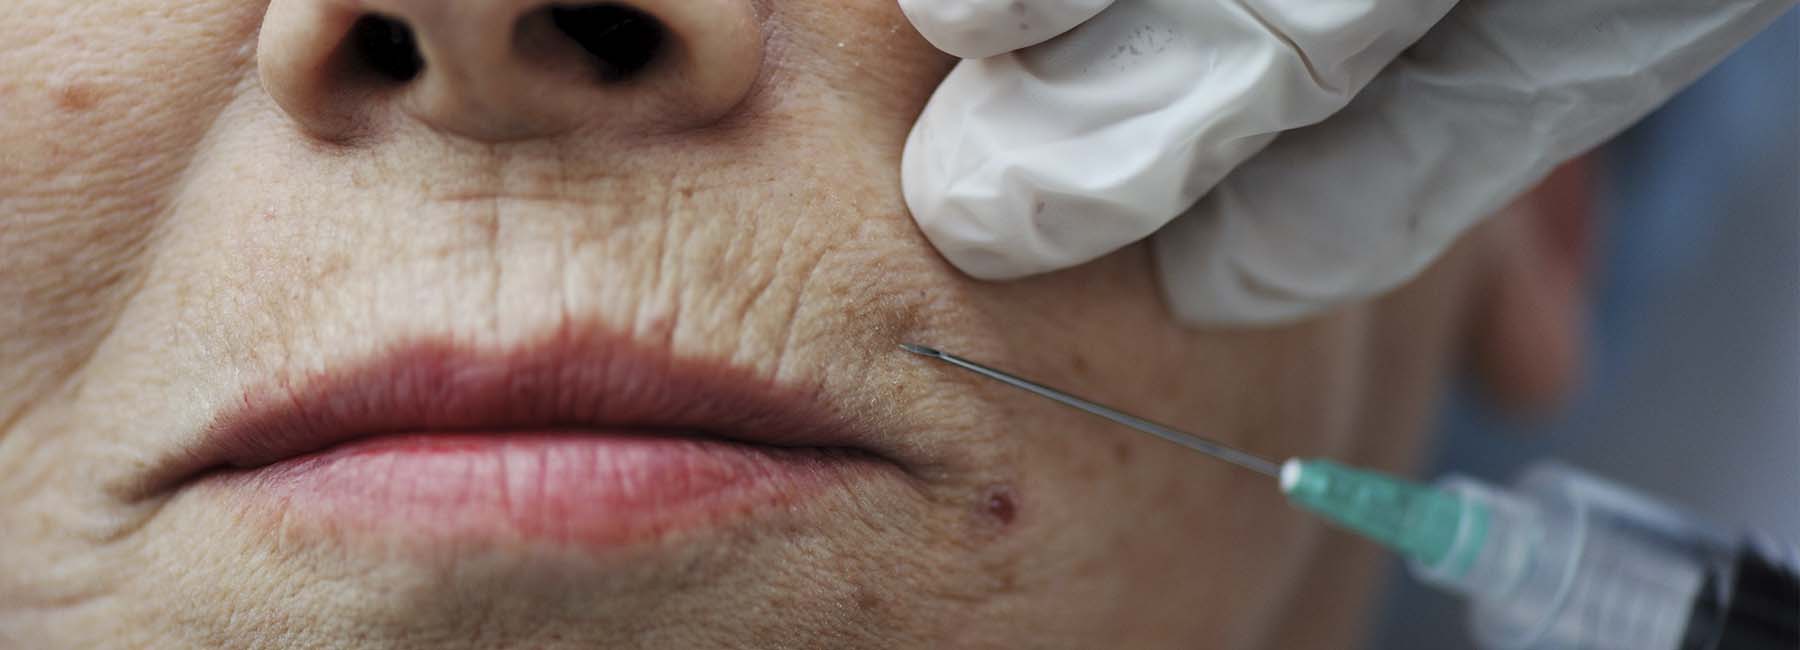 rejuvenecimiento facial con plasma rico en plaquetas en Las Palmas de Gran Canaria